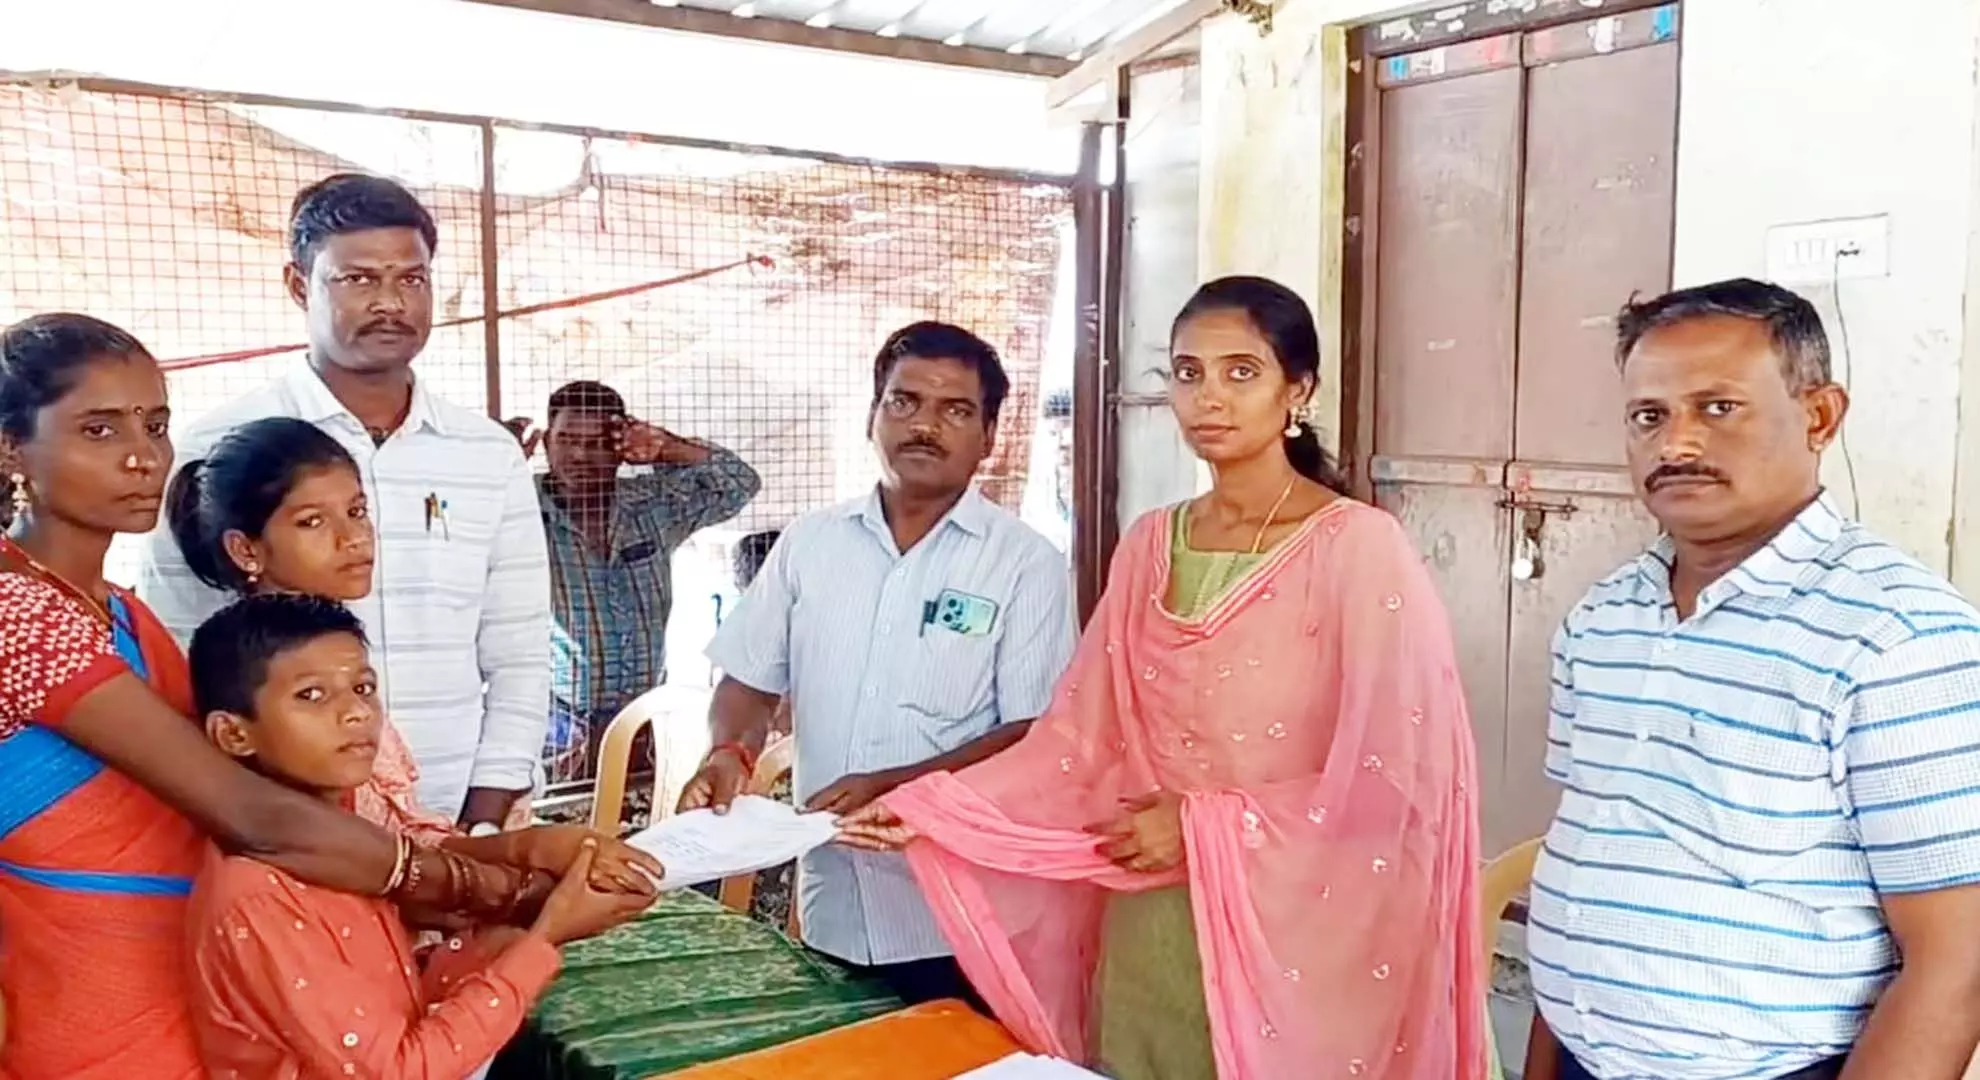 तमिलनाडु: सिरकाज़ी तहसीलदार पहुंचे दरवाजे पर, आदिवासी छात्रों के सामुदायिक प्रमाणपत्र की उम्मीद जगी